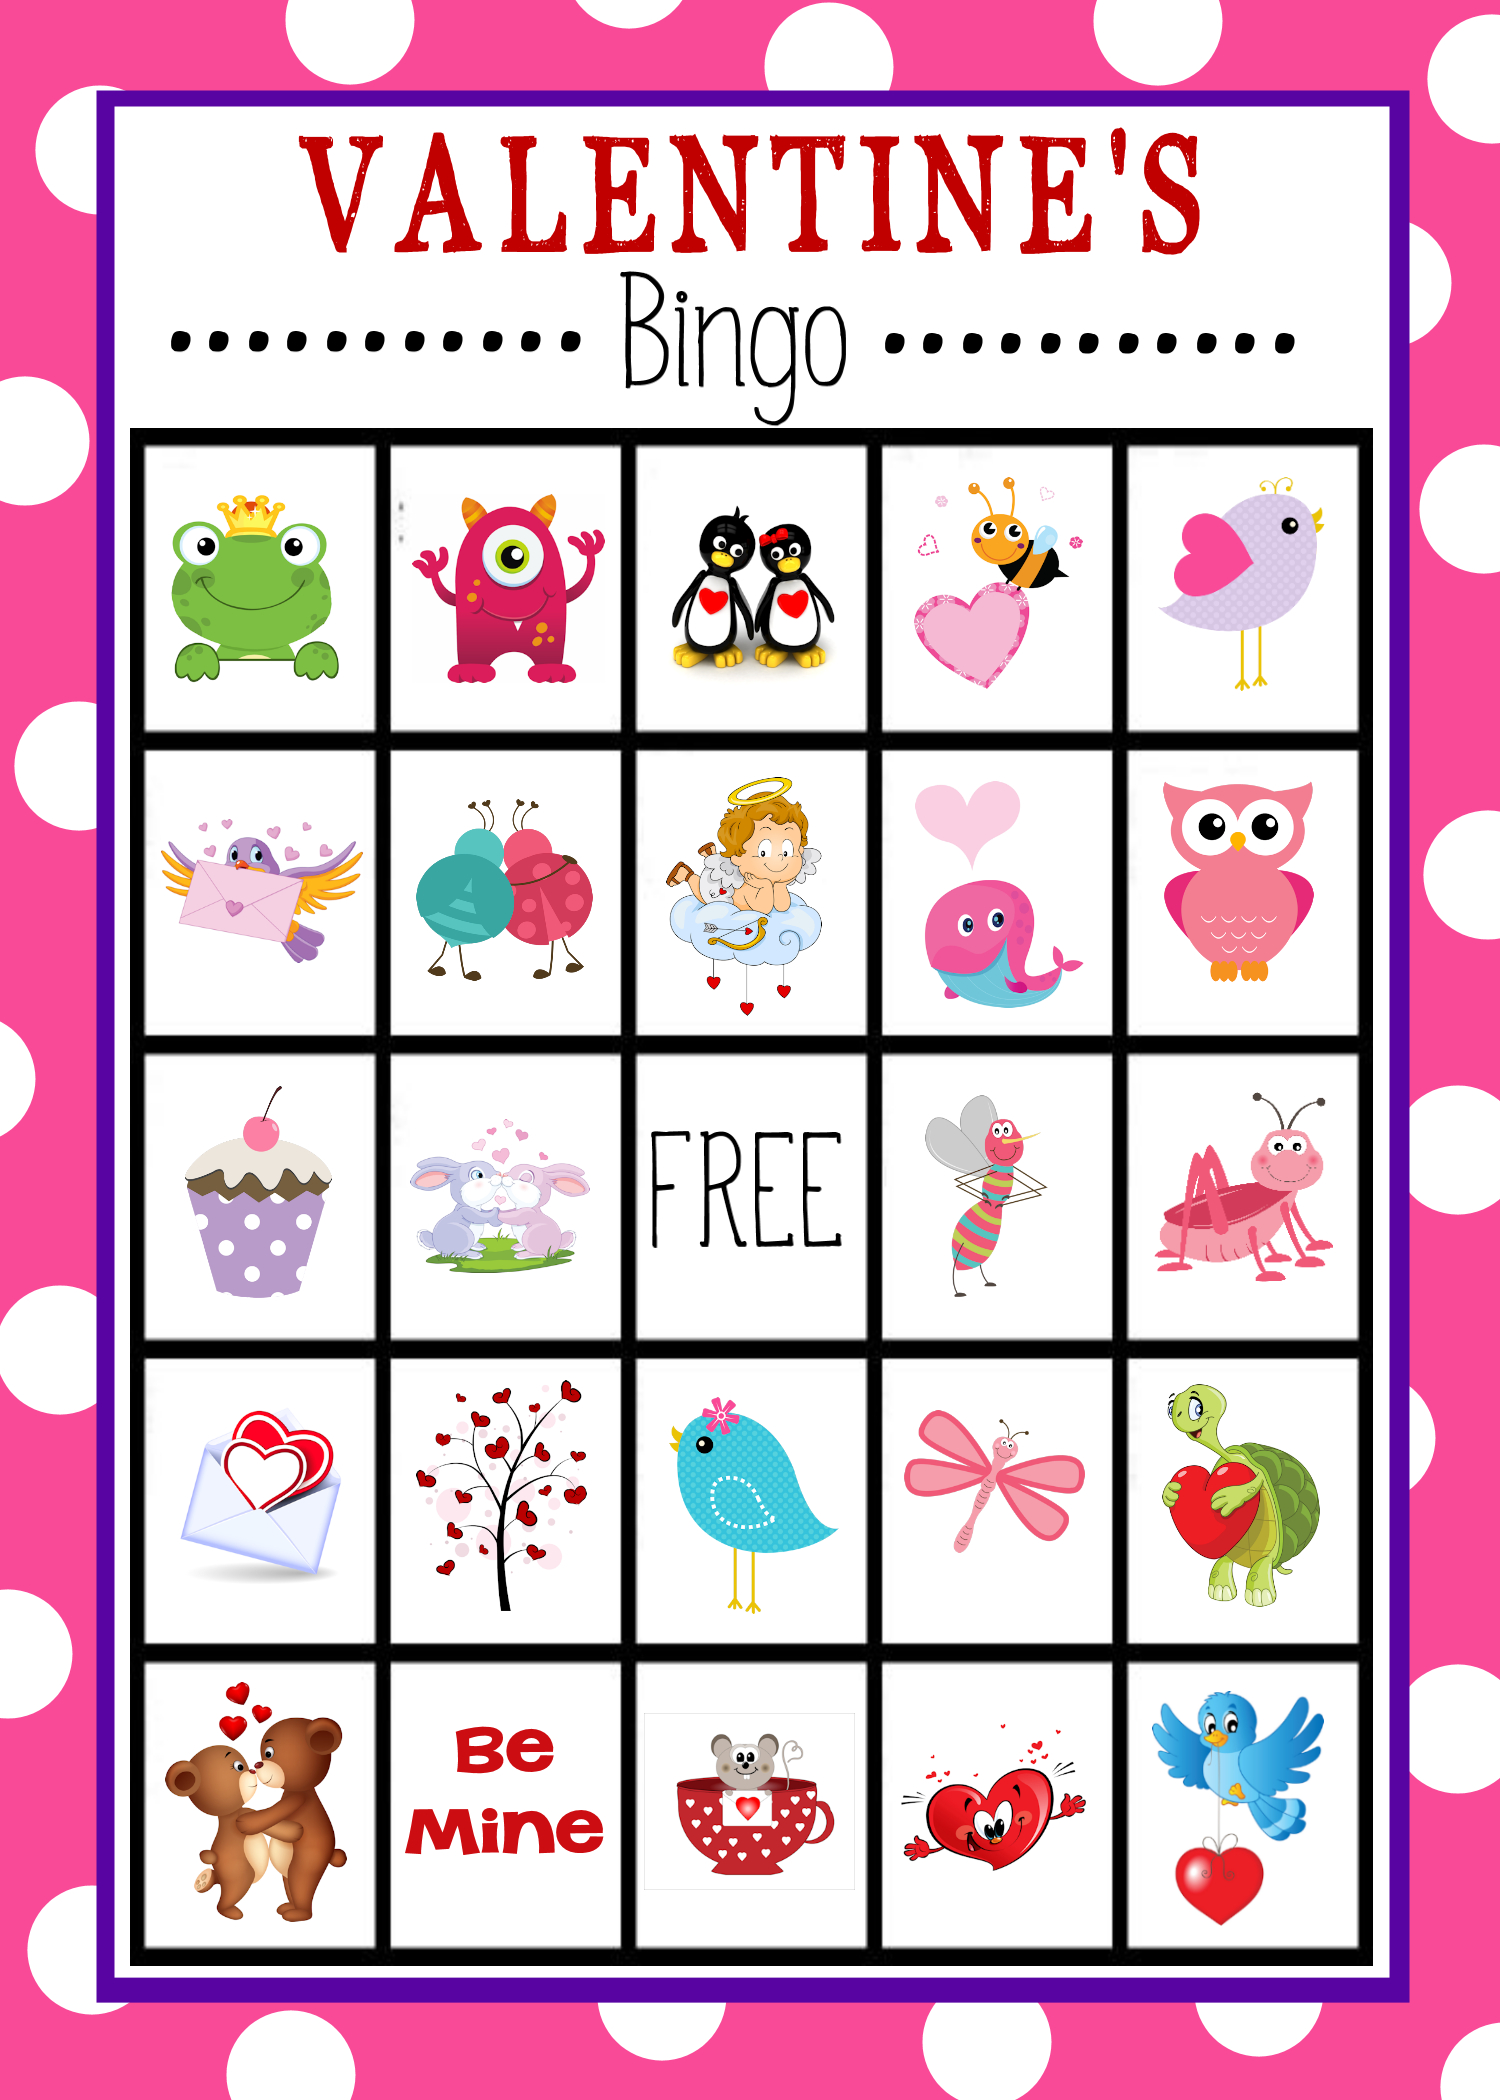 Valentine&amp;#039;s Bingo Game To Print &amp;amp; Play | Valentine&amp;#039;s Day Activities - Free Printable Valentines Bingo